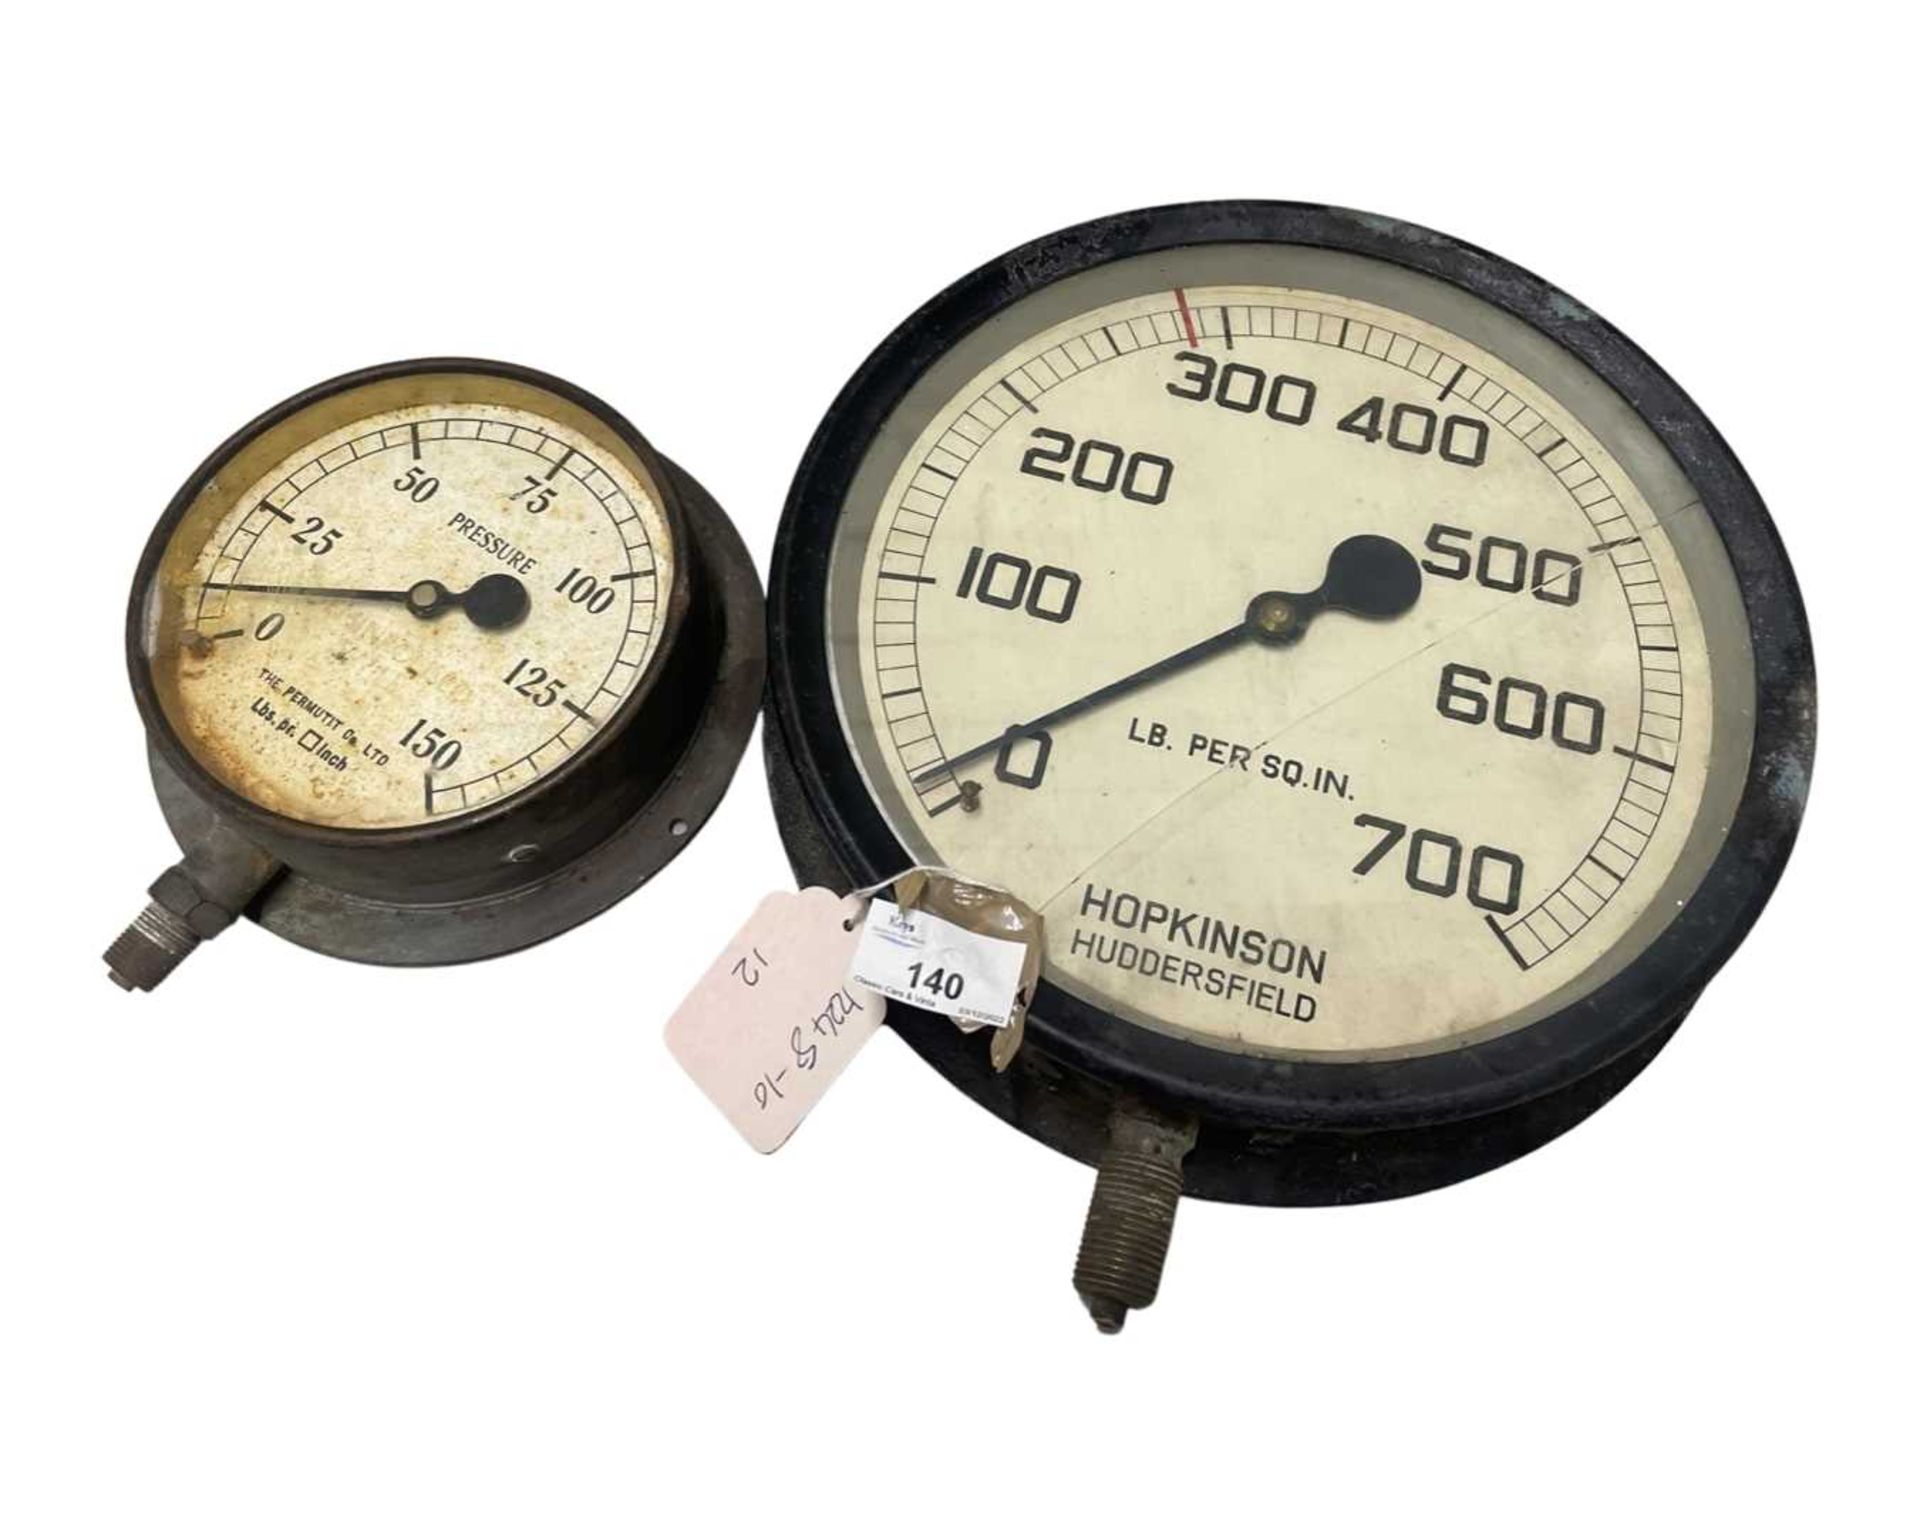 Two vintage brass pressure gauges